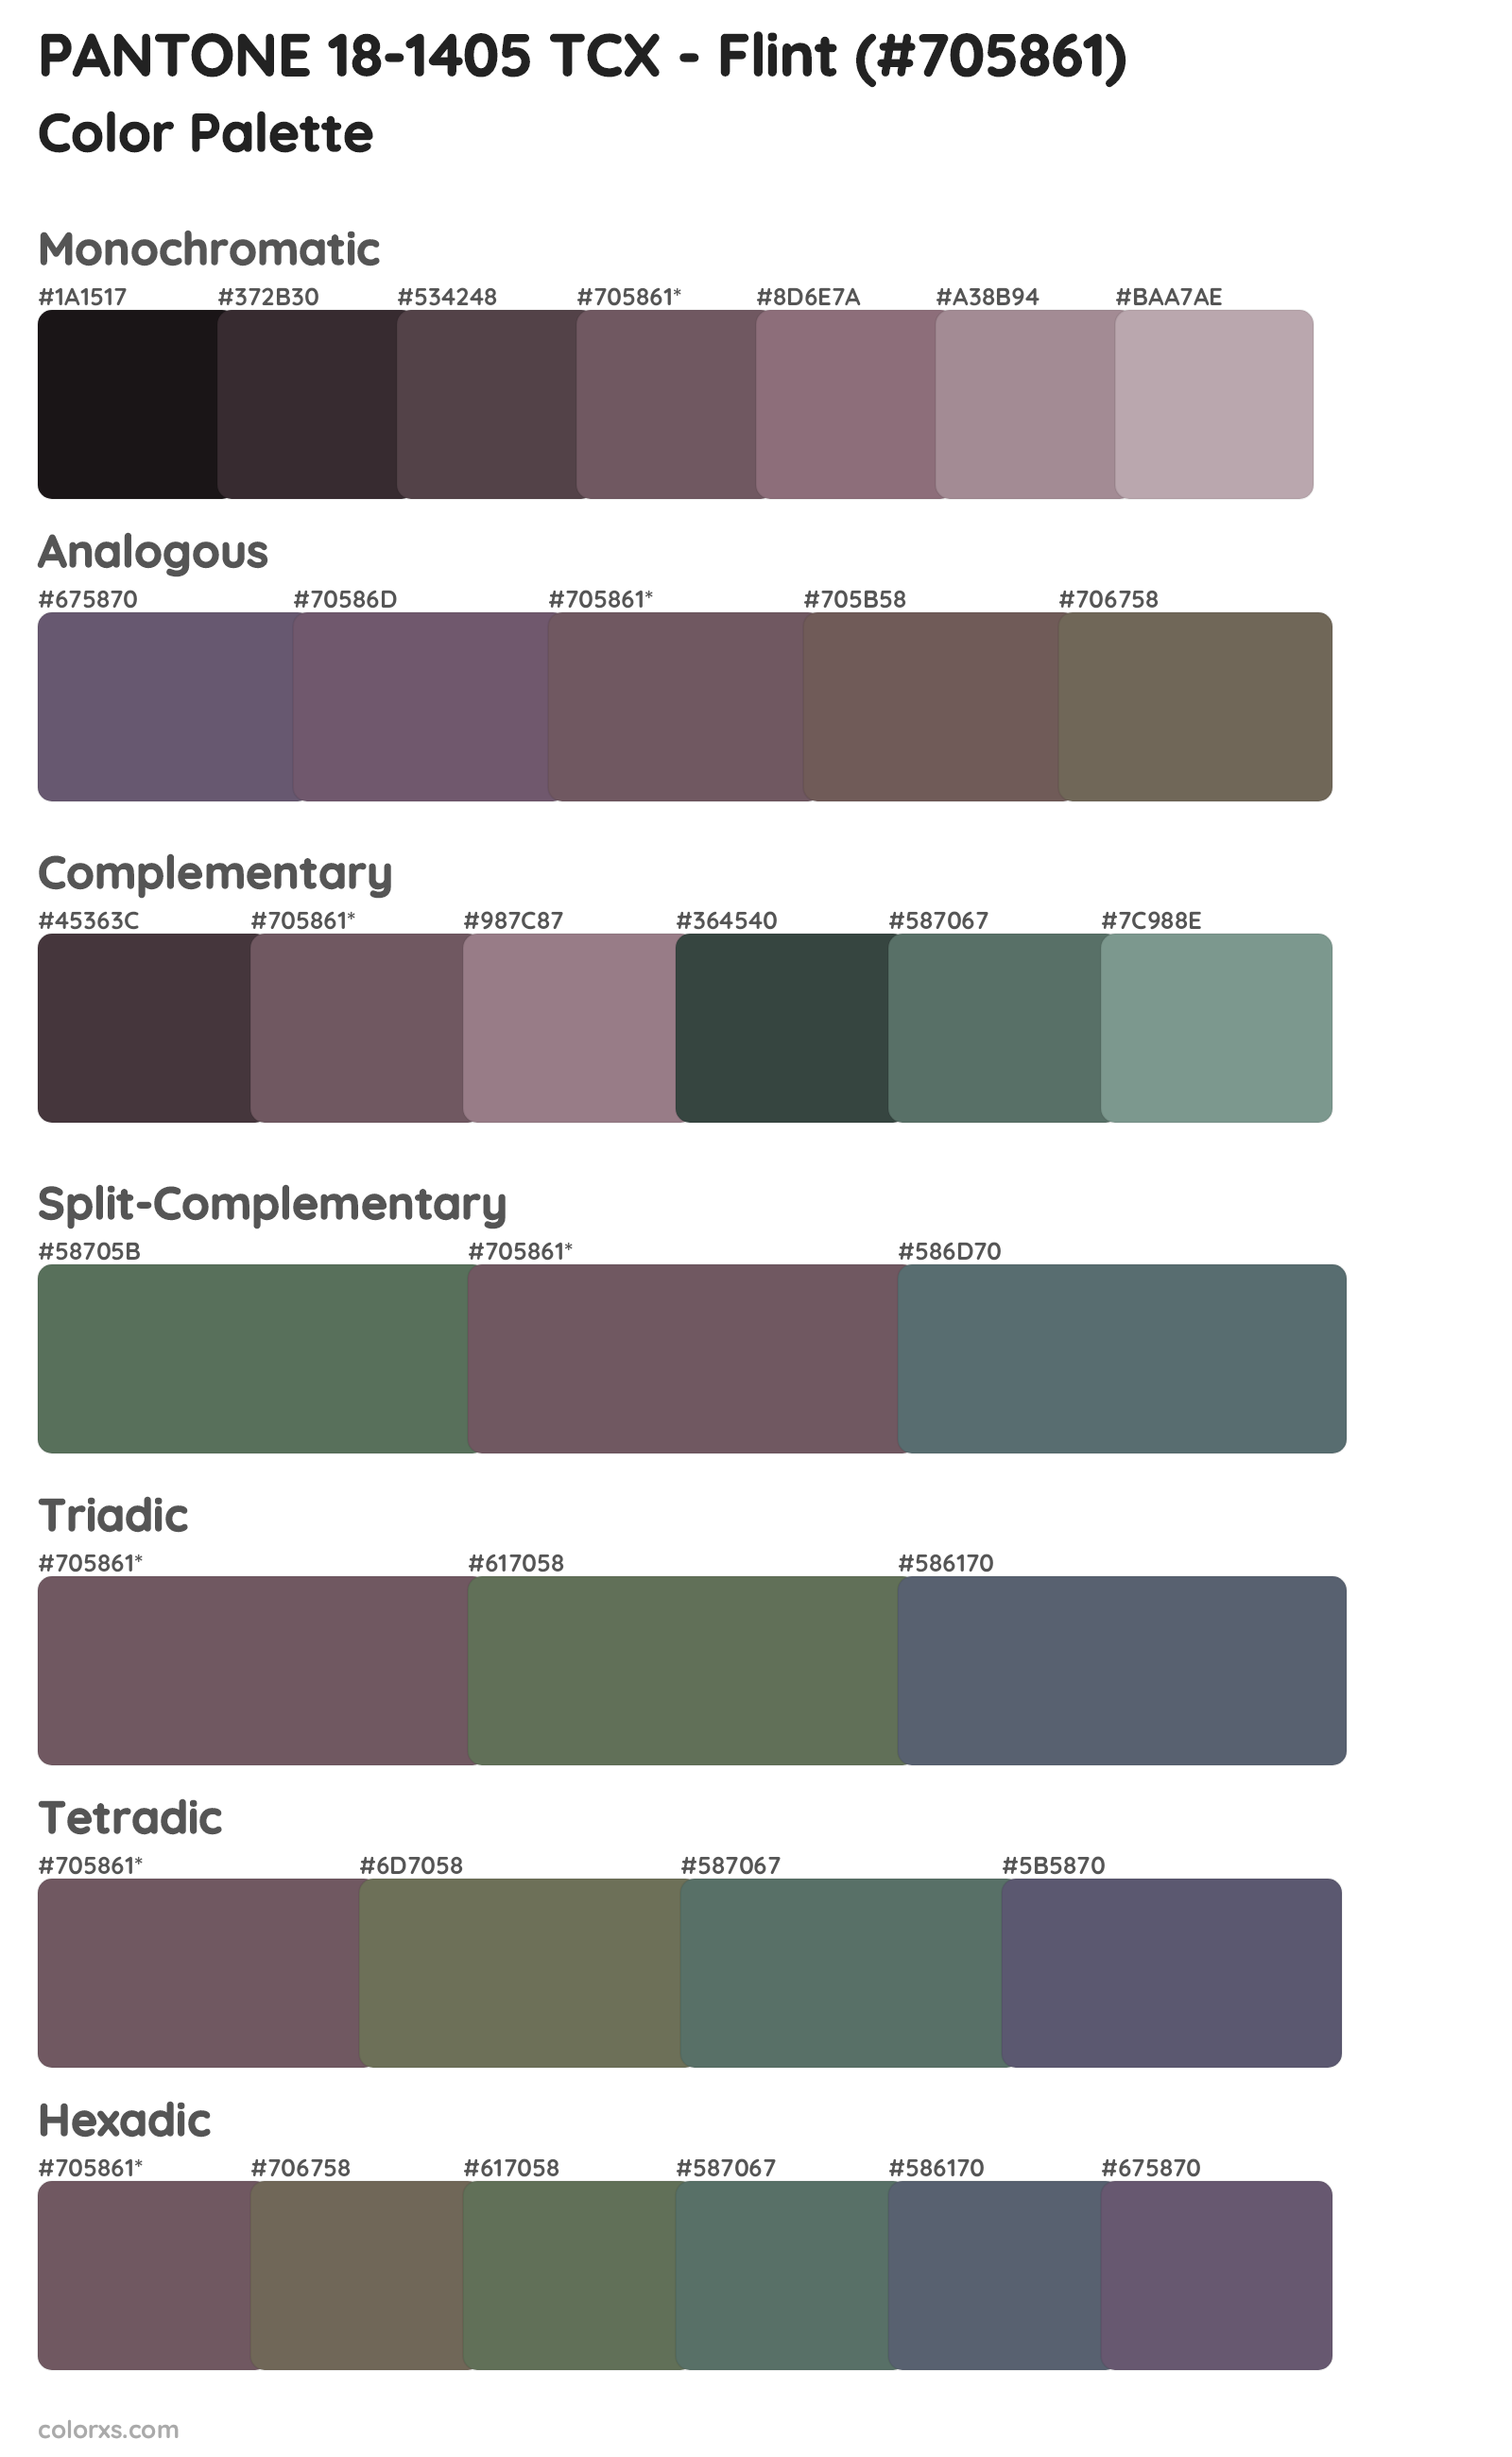 PANTONE 18-1405 TCX - Flint Color Scheme Palettes